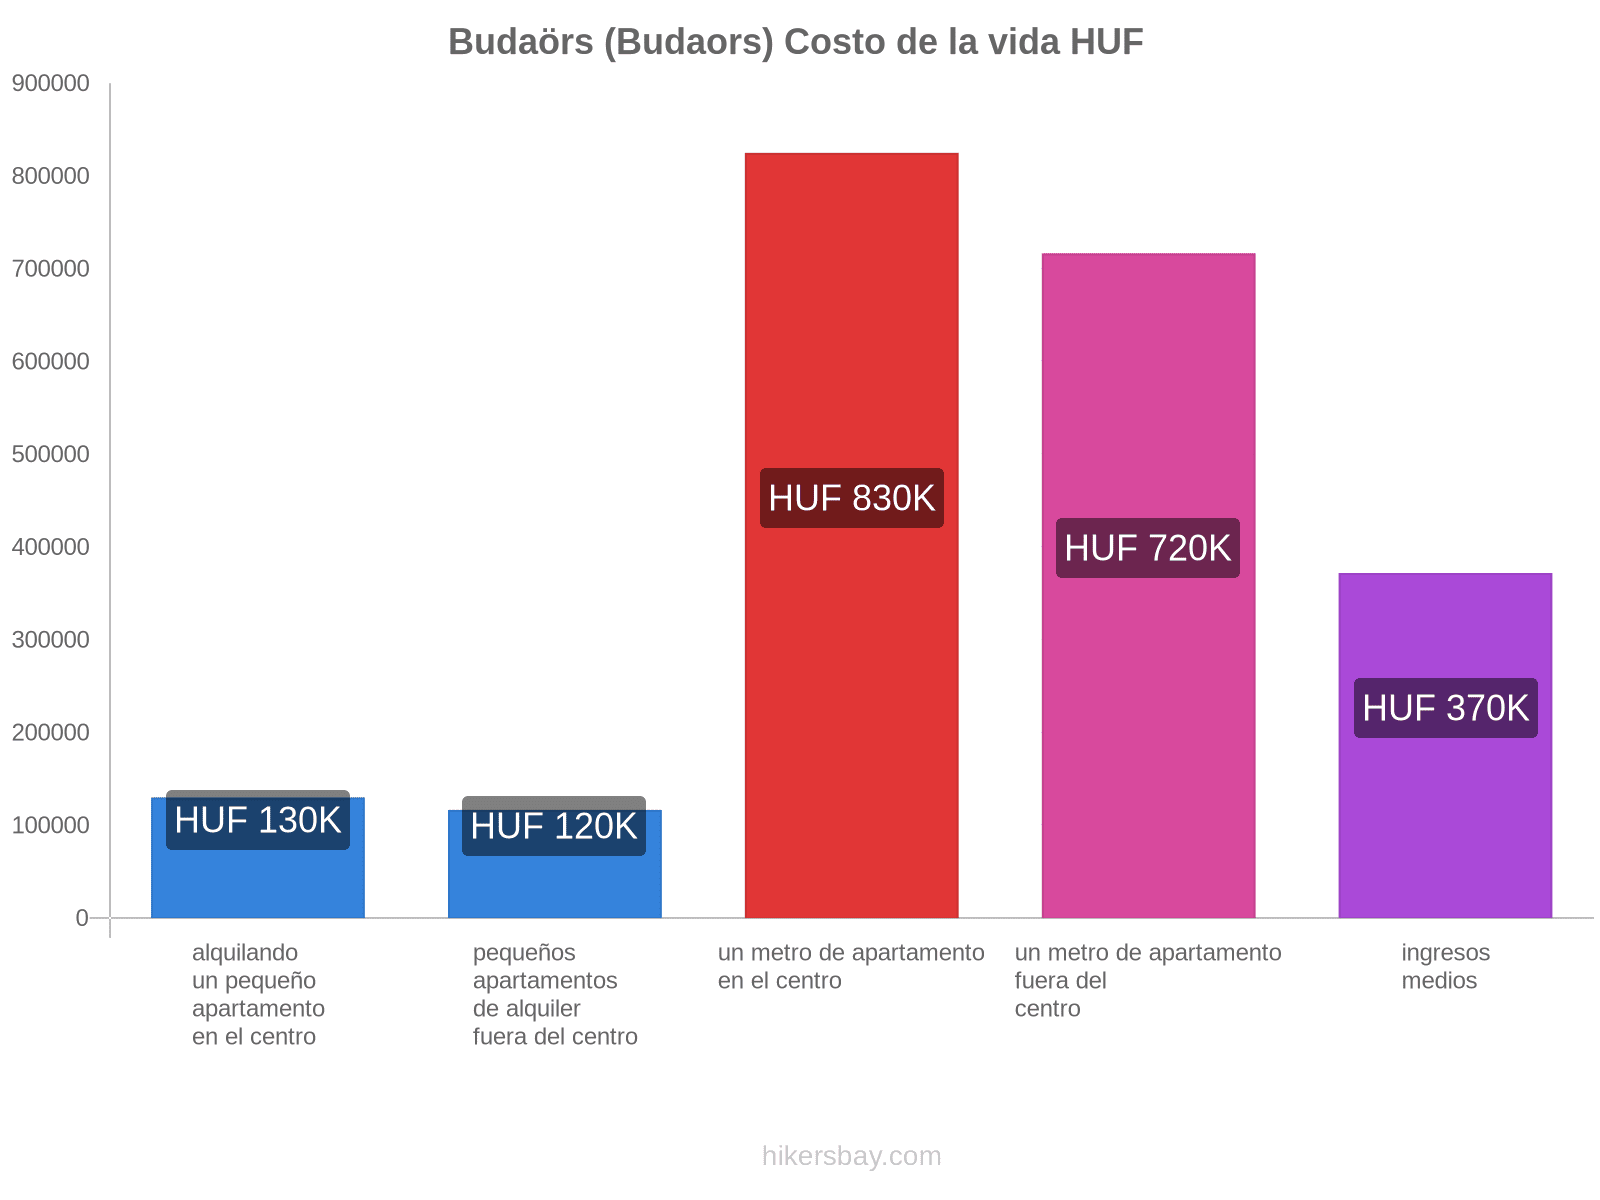 Budaörs (Budaors) costo de la vida hikersbay.com